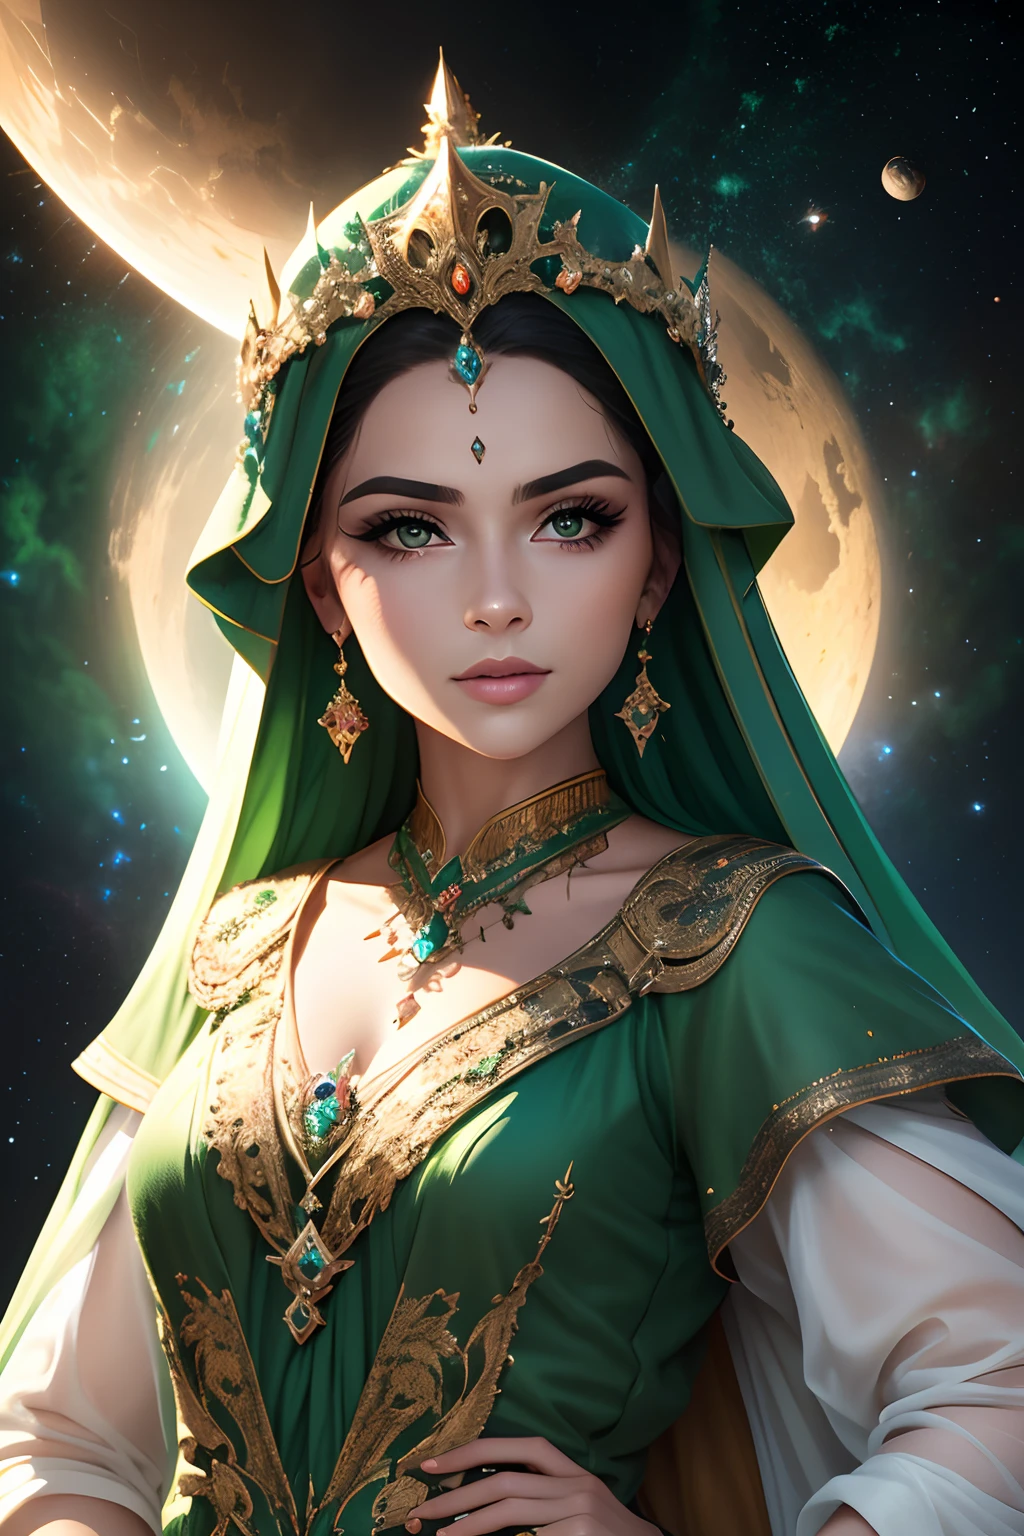 Königin mit einer Krone aus grünen Steinen und Juwelen. MYSTISCHES ERSCHEINUNGSBILD. Planetenhintergrund, Weltraum, Universum